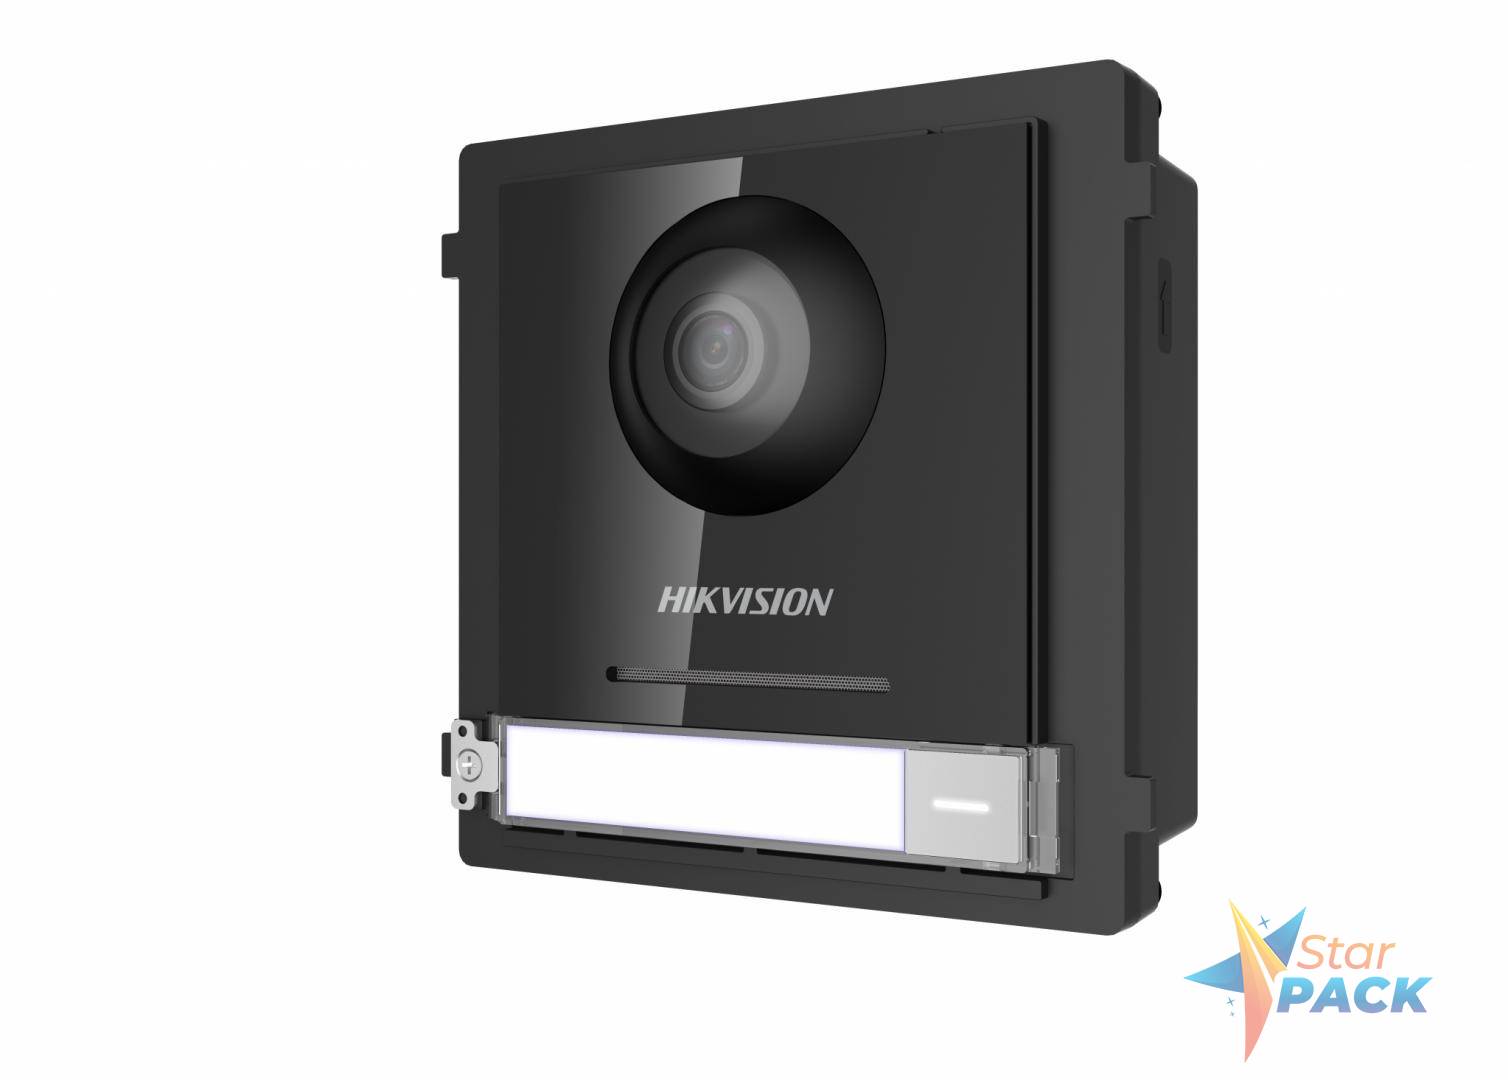 PANOU videointerfon modular de exterior Hikvision,1 xbuton apelare, camera video wide angle 180grade Fish eye 2MP, permite conectarea pana la 8 submodule de extensie